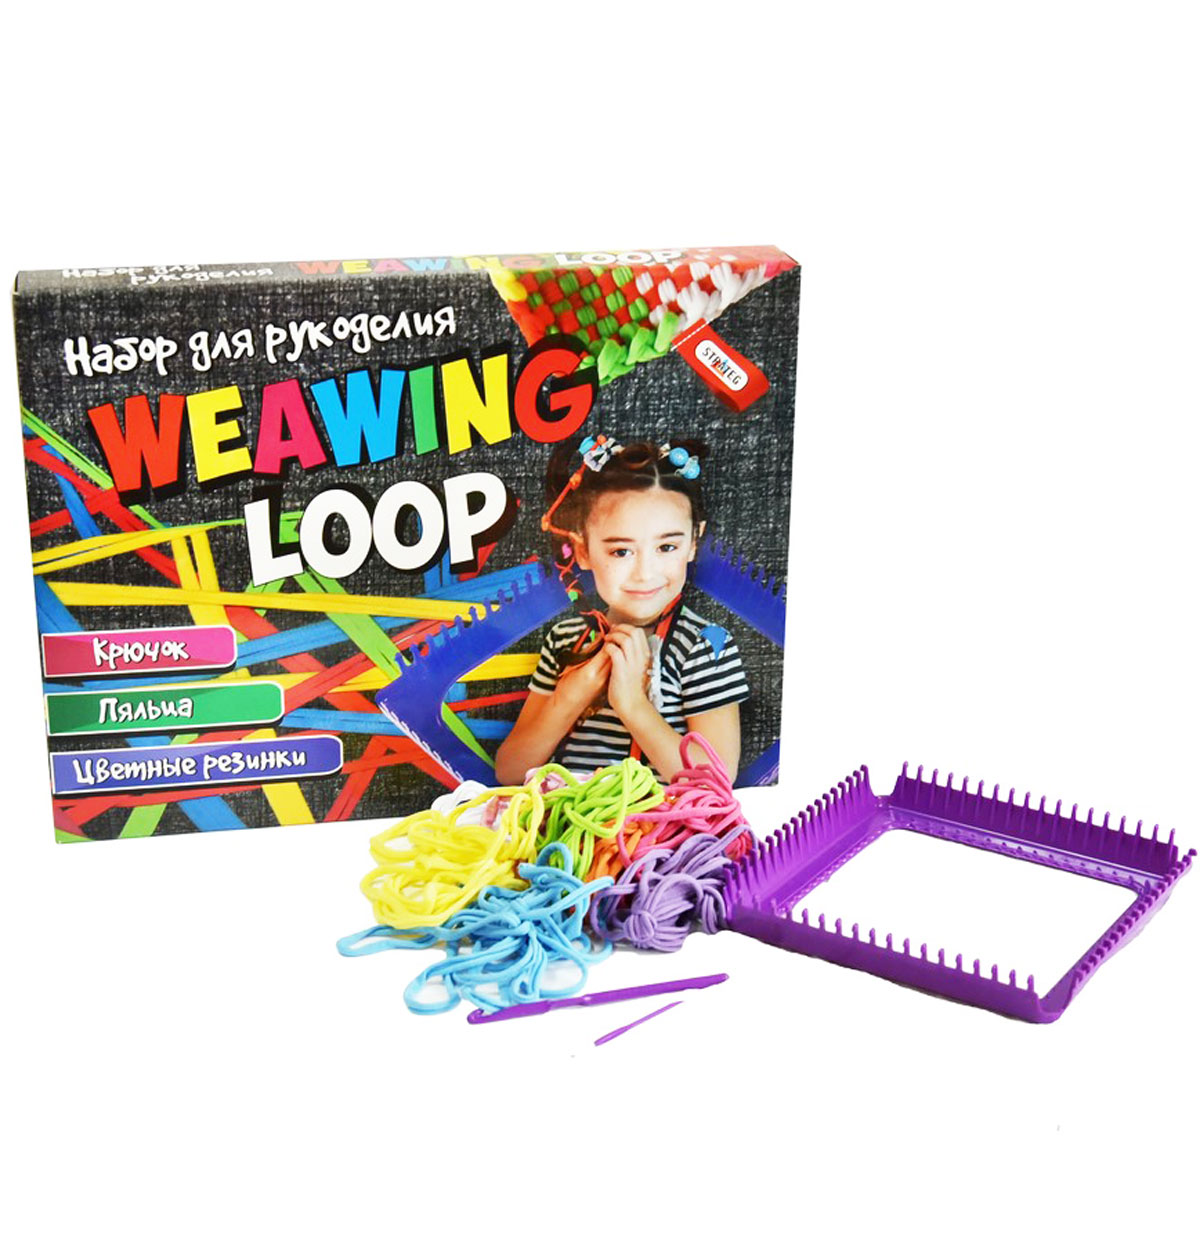 Набор для творчества 'Weawing Loop' плетение